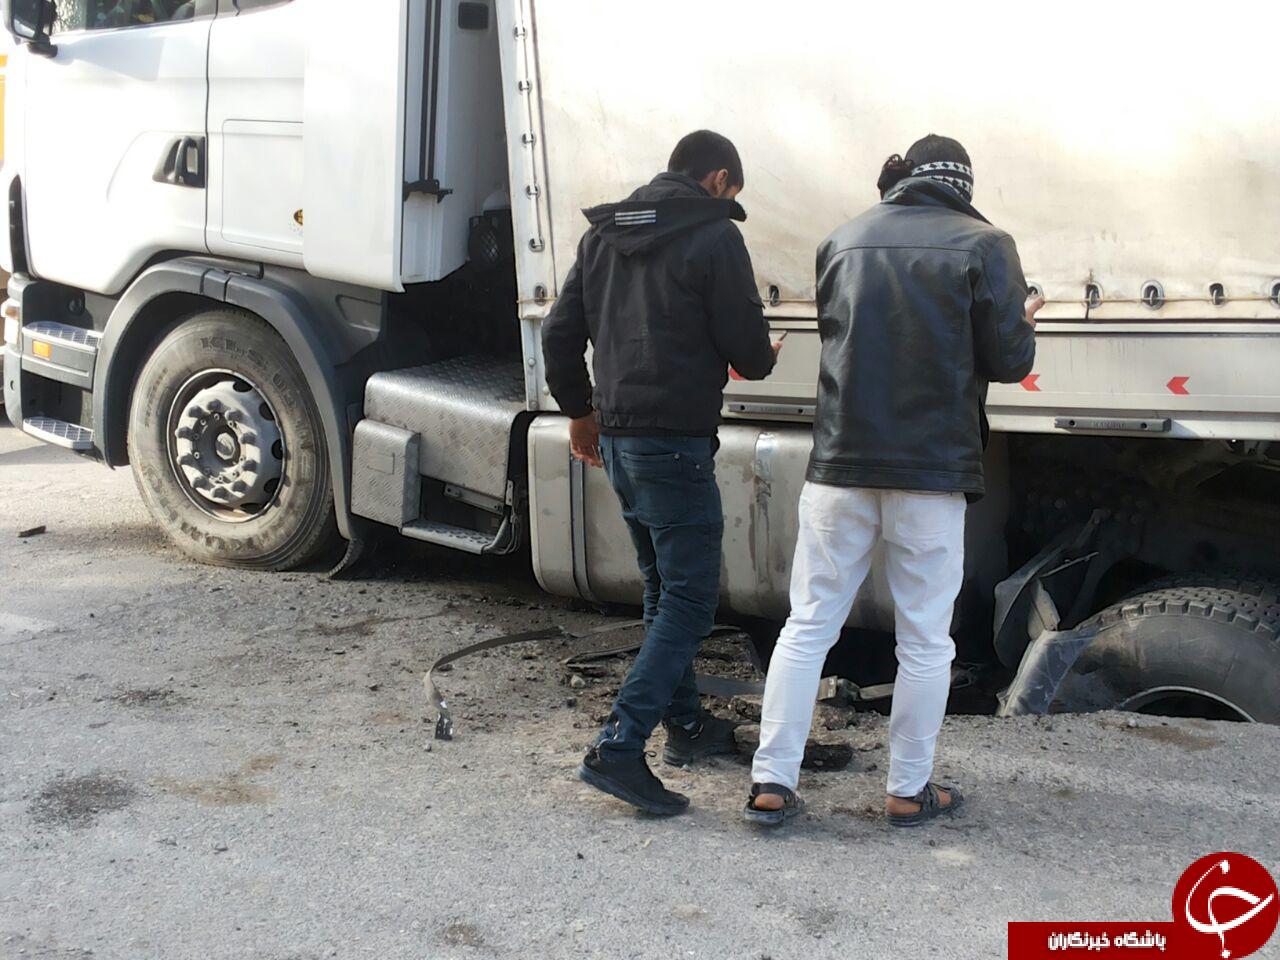 کامیونی که در خیابان بلعیده شد + فیلم و تصاویر